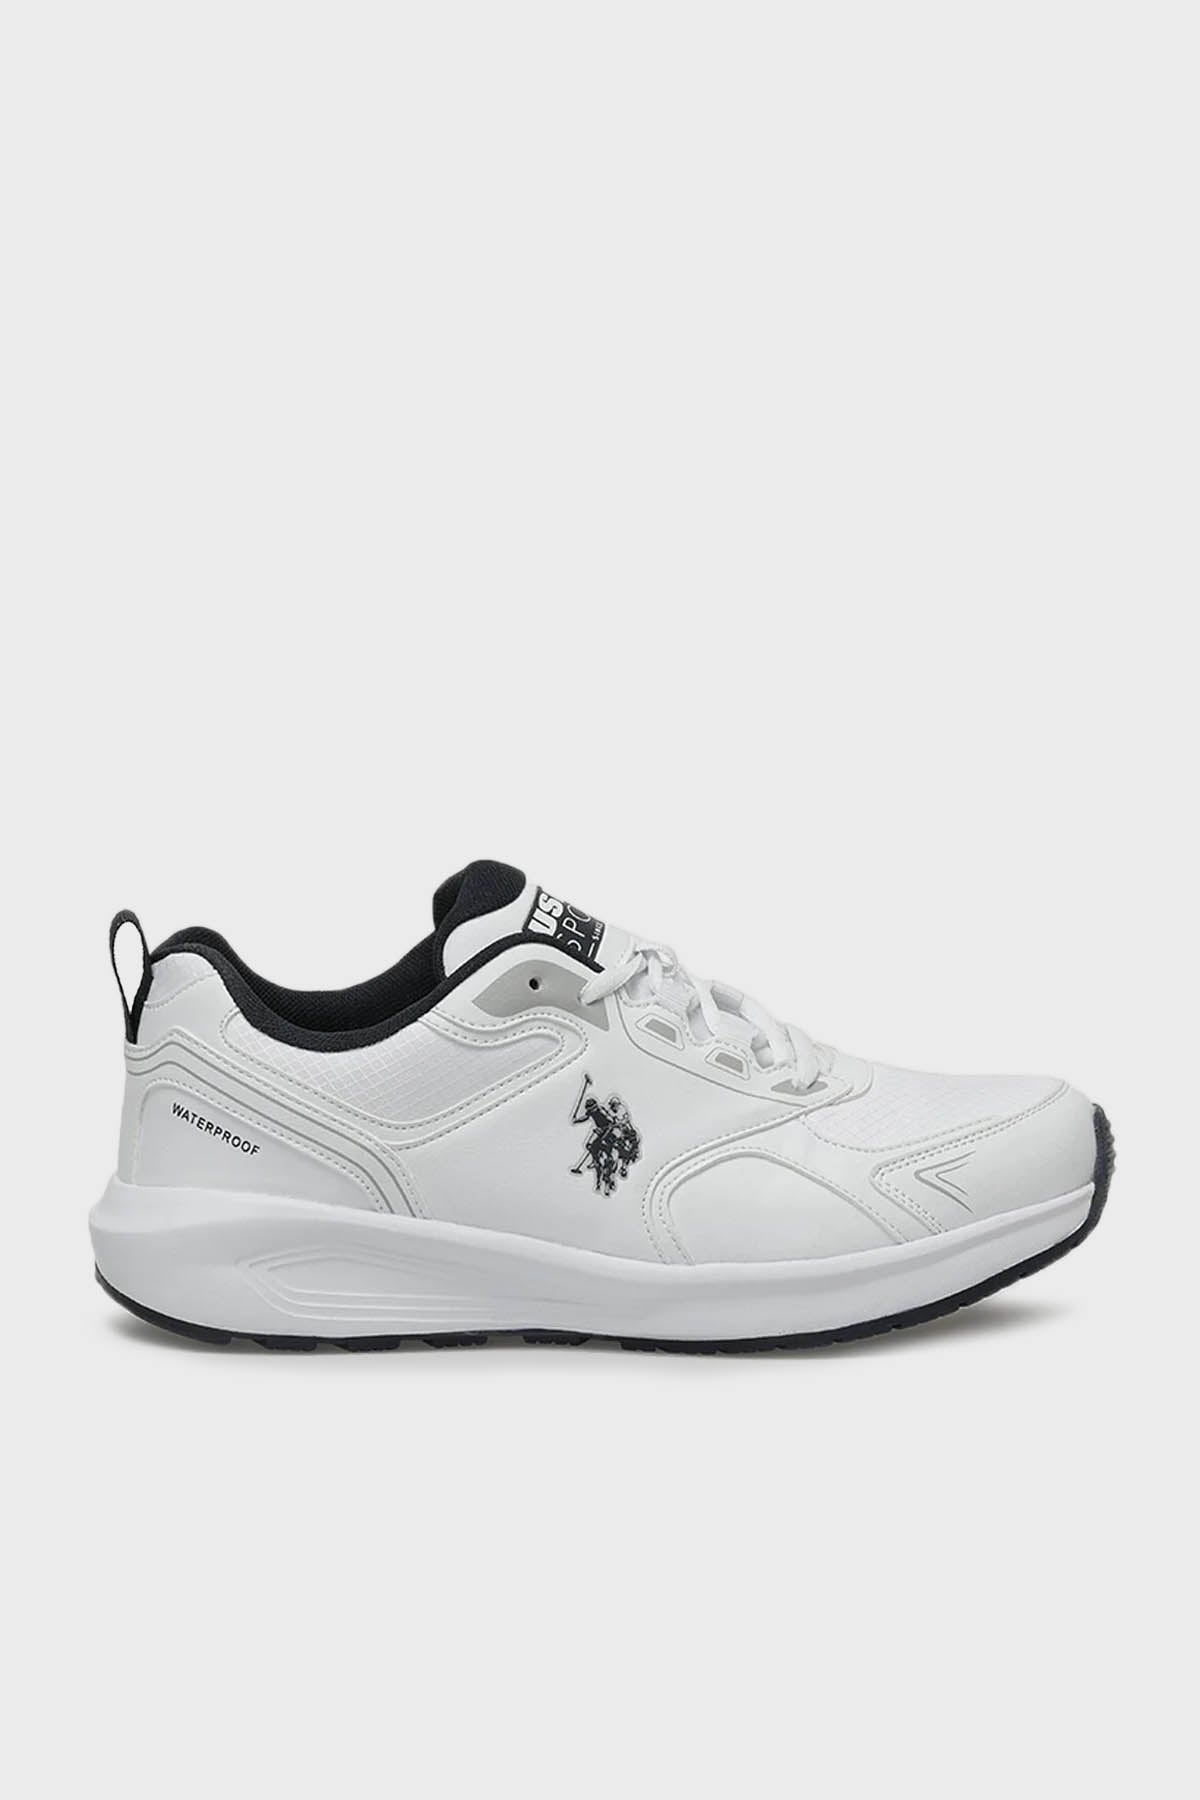 U.S. Polo Su Geçirmez Sneaker Erkek Ayakkabı LUKA 3PR BEYAZ